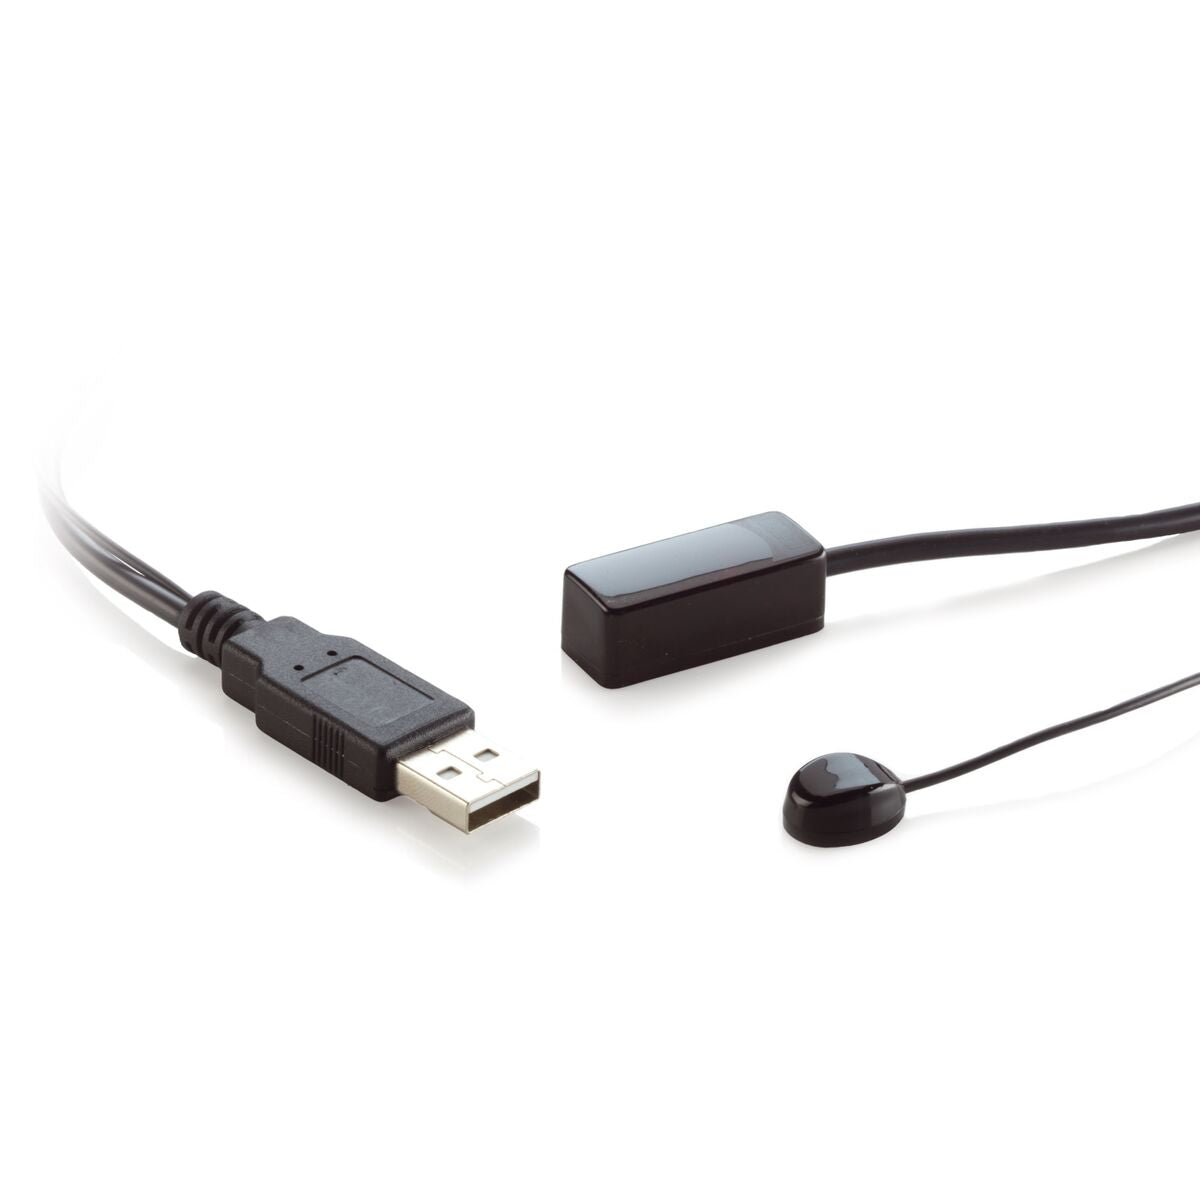 IR 100 USB - IR extender - Alimenté par USB -  1 app.